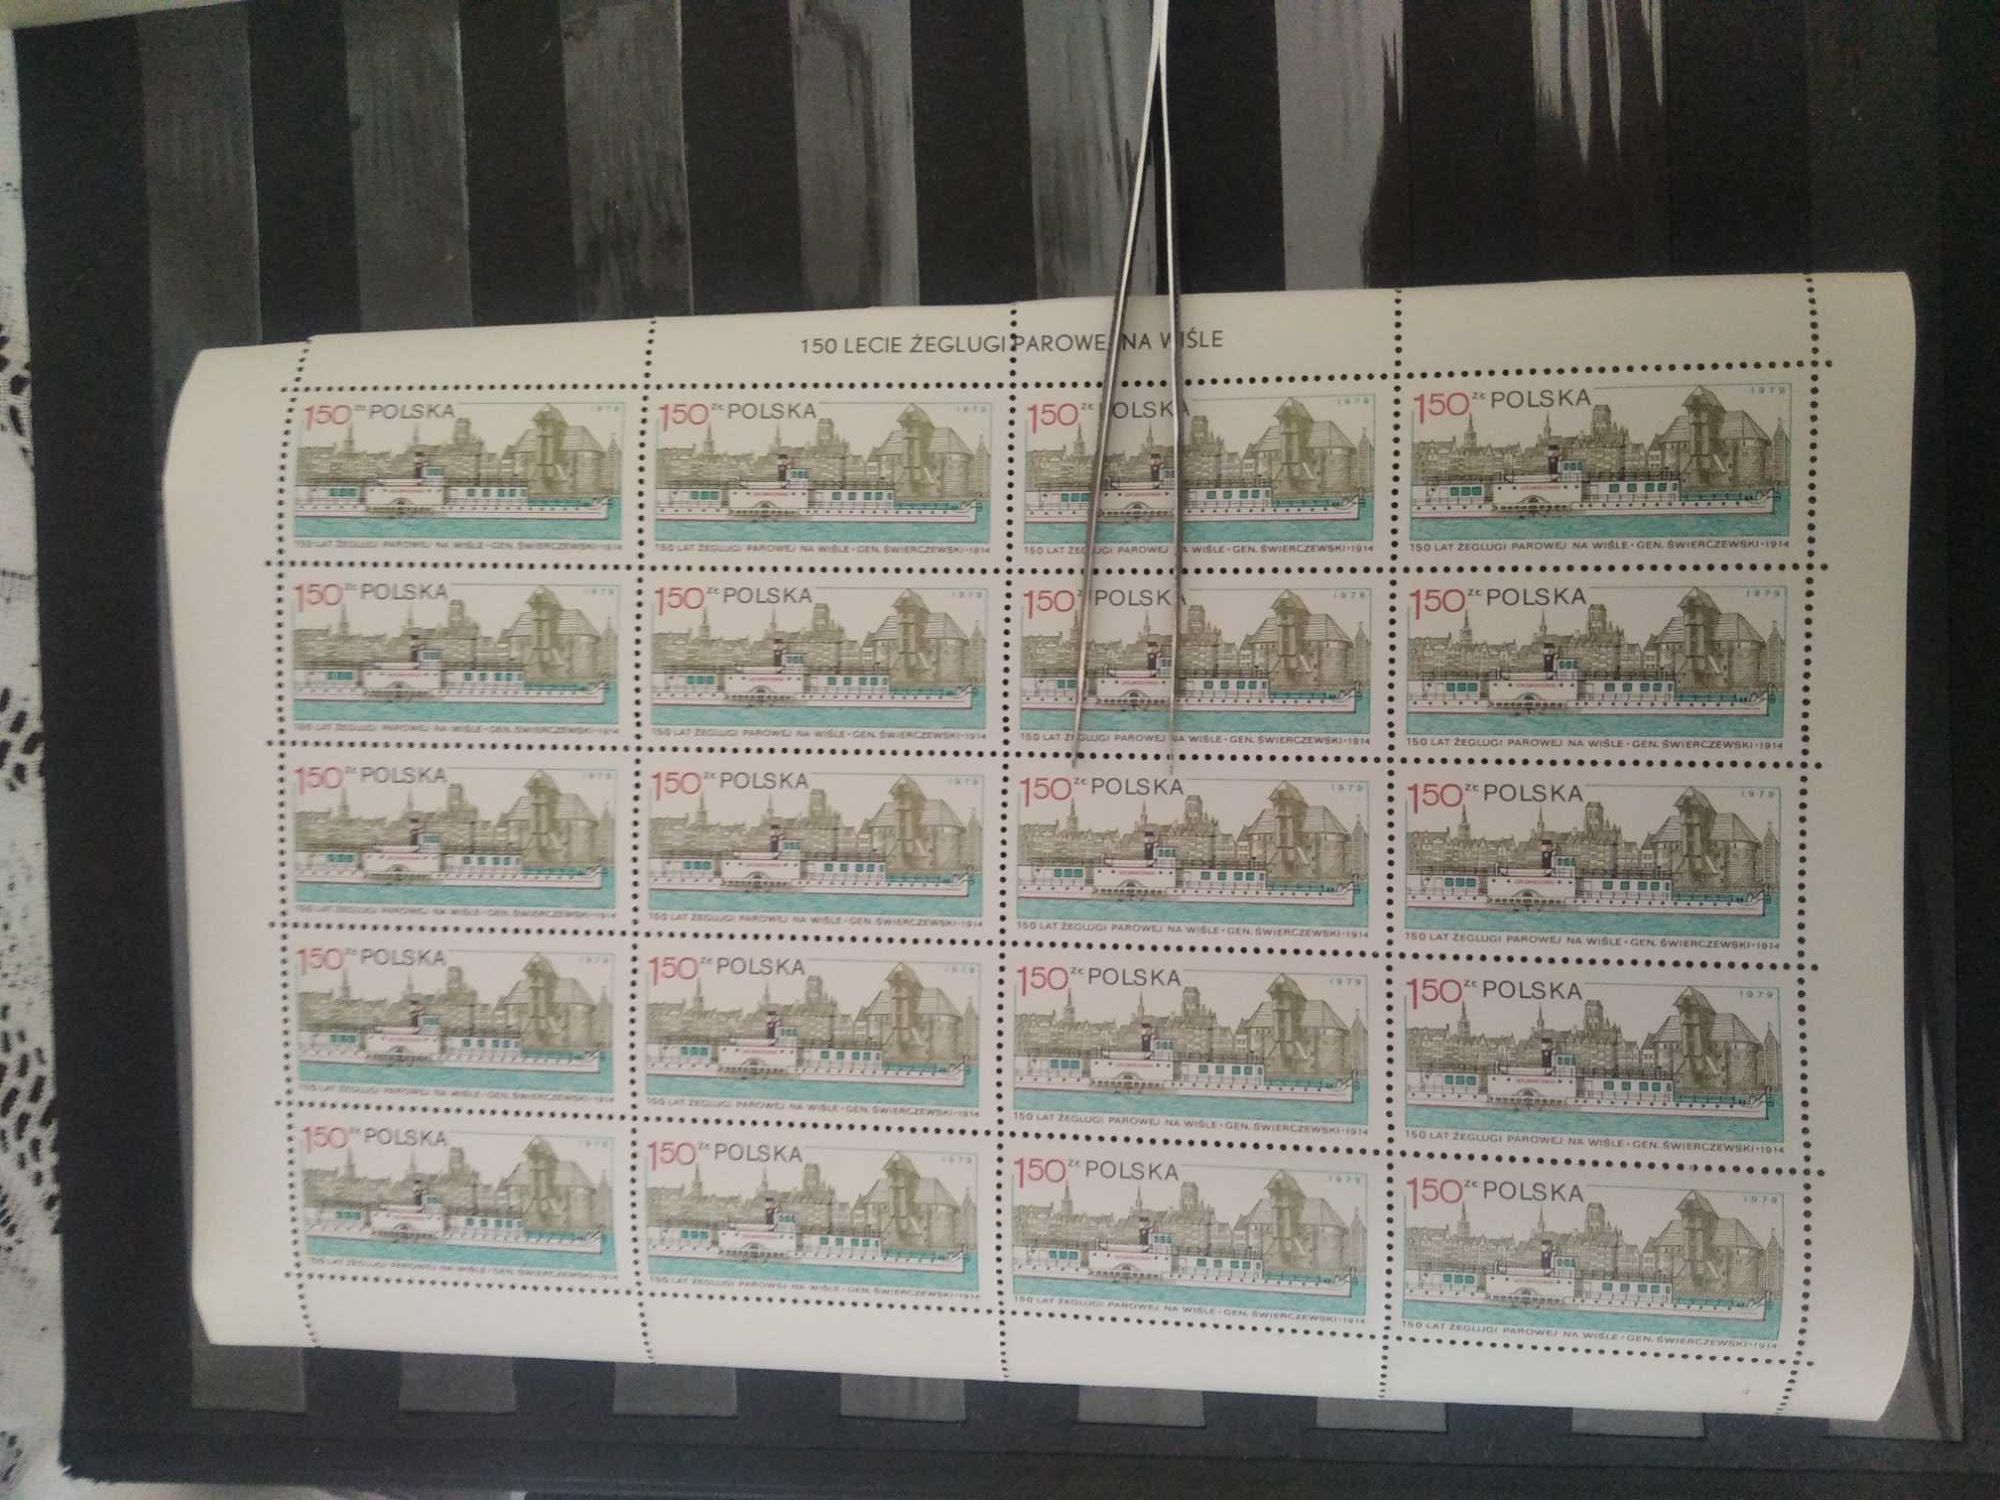 Arkusz znaczek,znaczki polskie,fi 2486 ** z B2 ŻEGLUGA PAROWA PO Wiśle